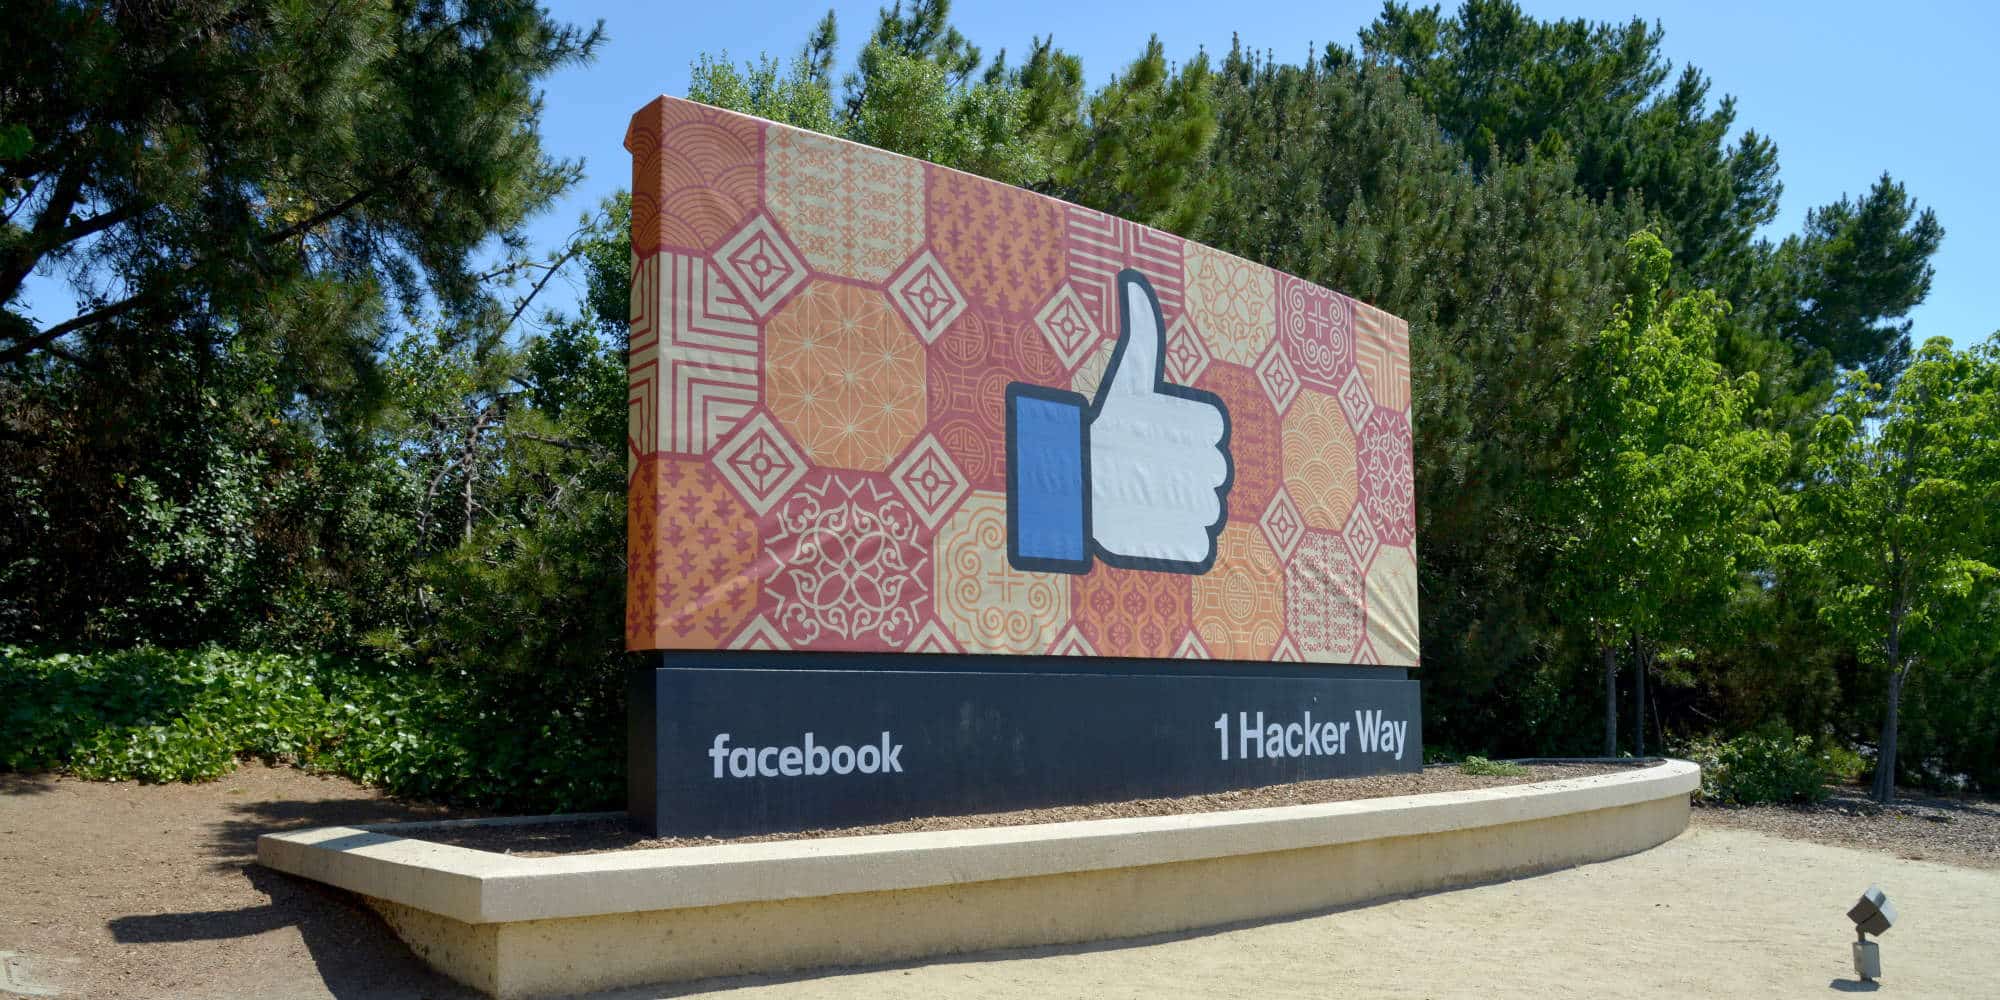 Πανό με το Facebook Like, στη Sillicon Valley, όπου βρίσκονται οι περισσότεροι τεχνολογικοί κολοσσοί